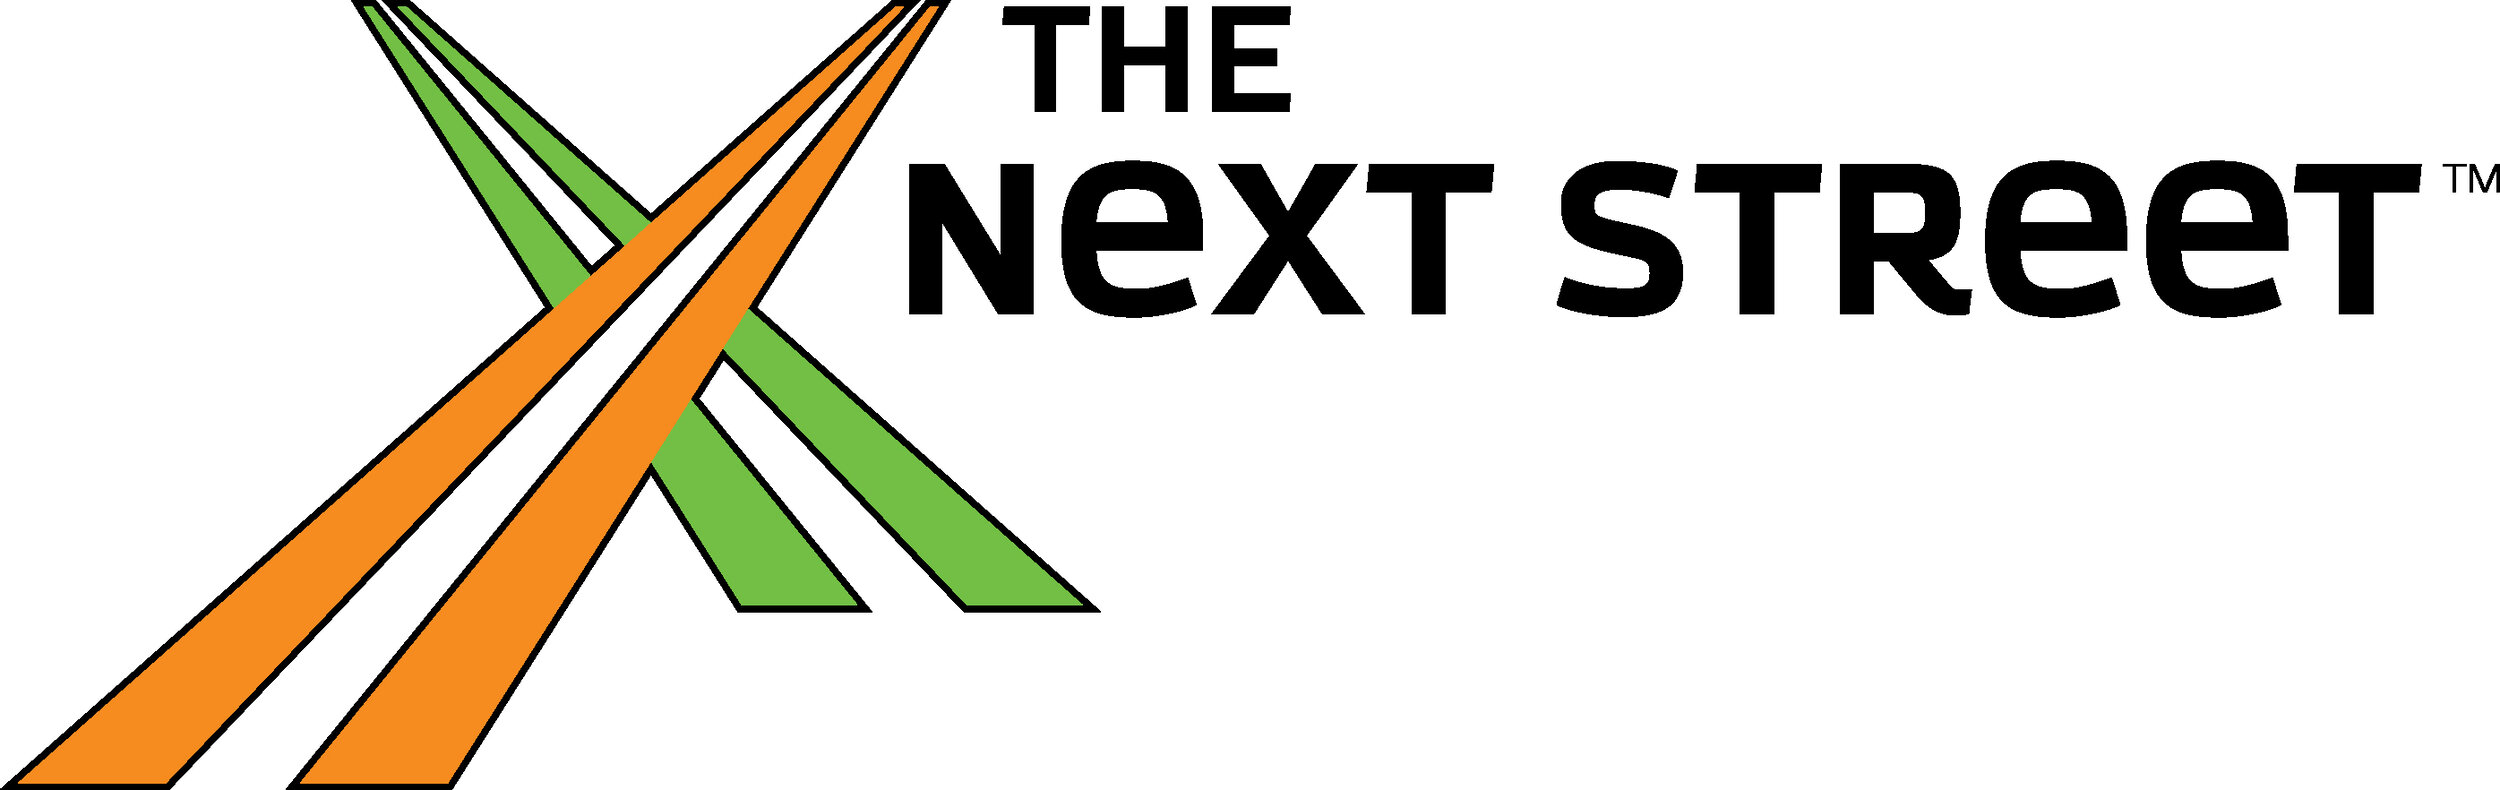 Next Street Logo.jpg